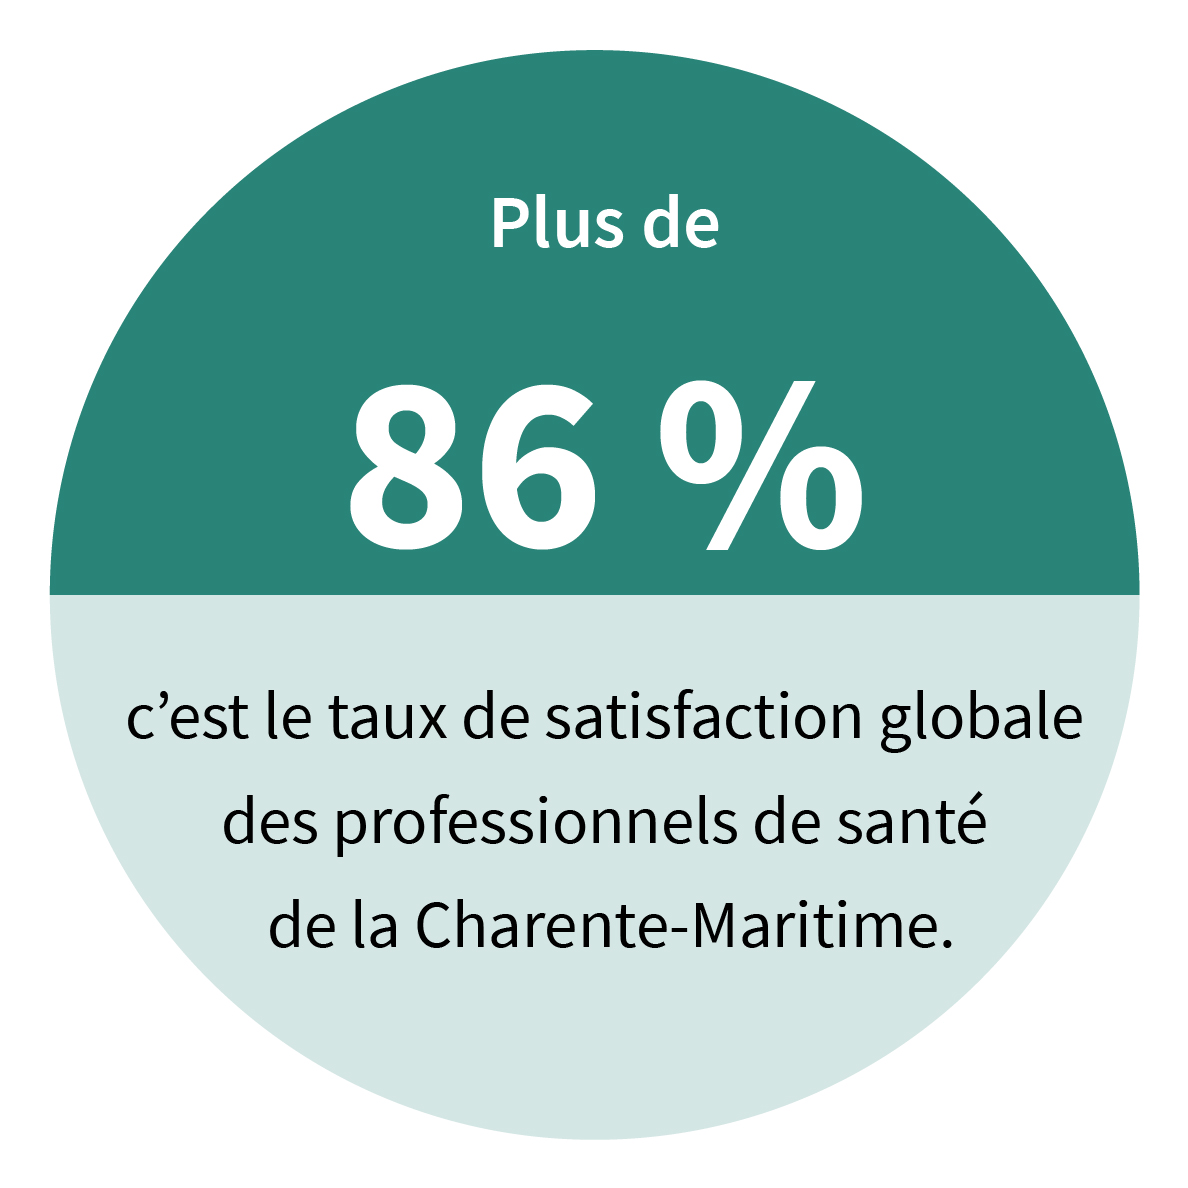 Plus de 86 %, c’est le taux de satisfaction globale des professionnels de santé de la Charente-Maritime.